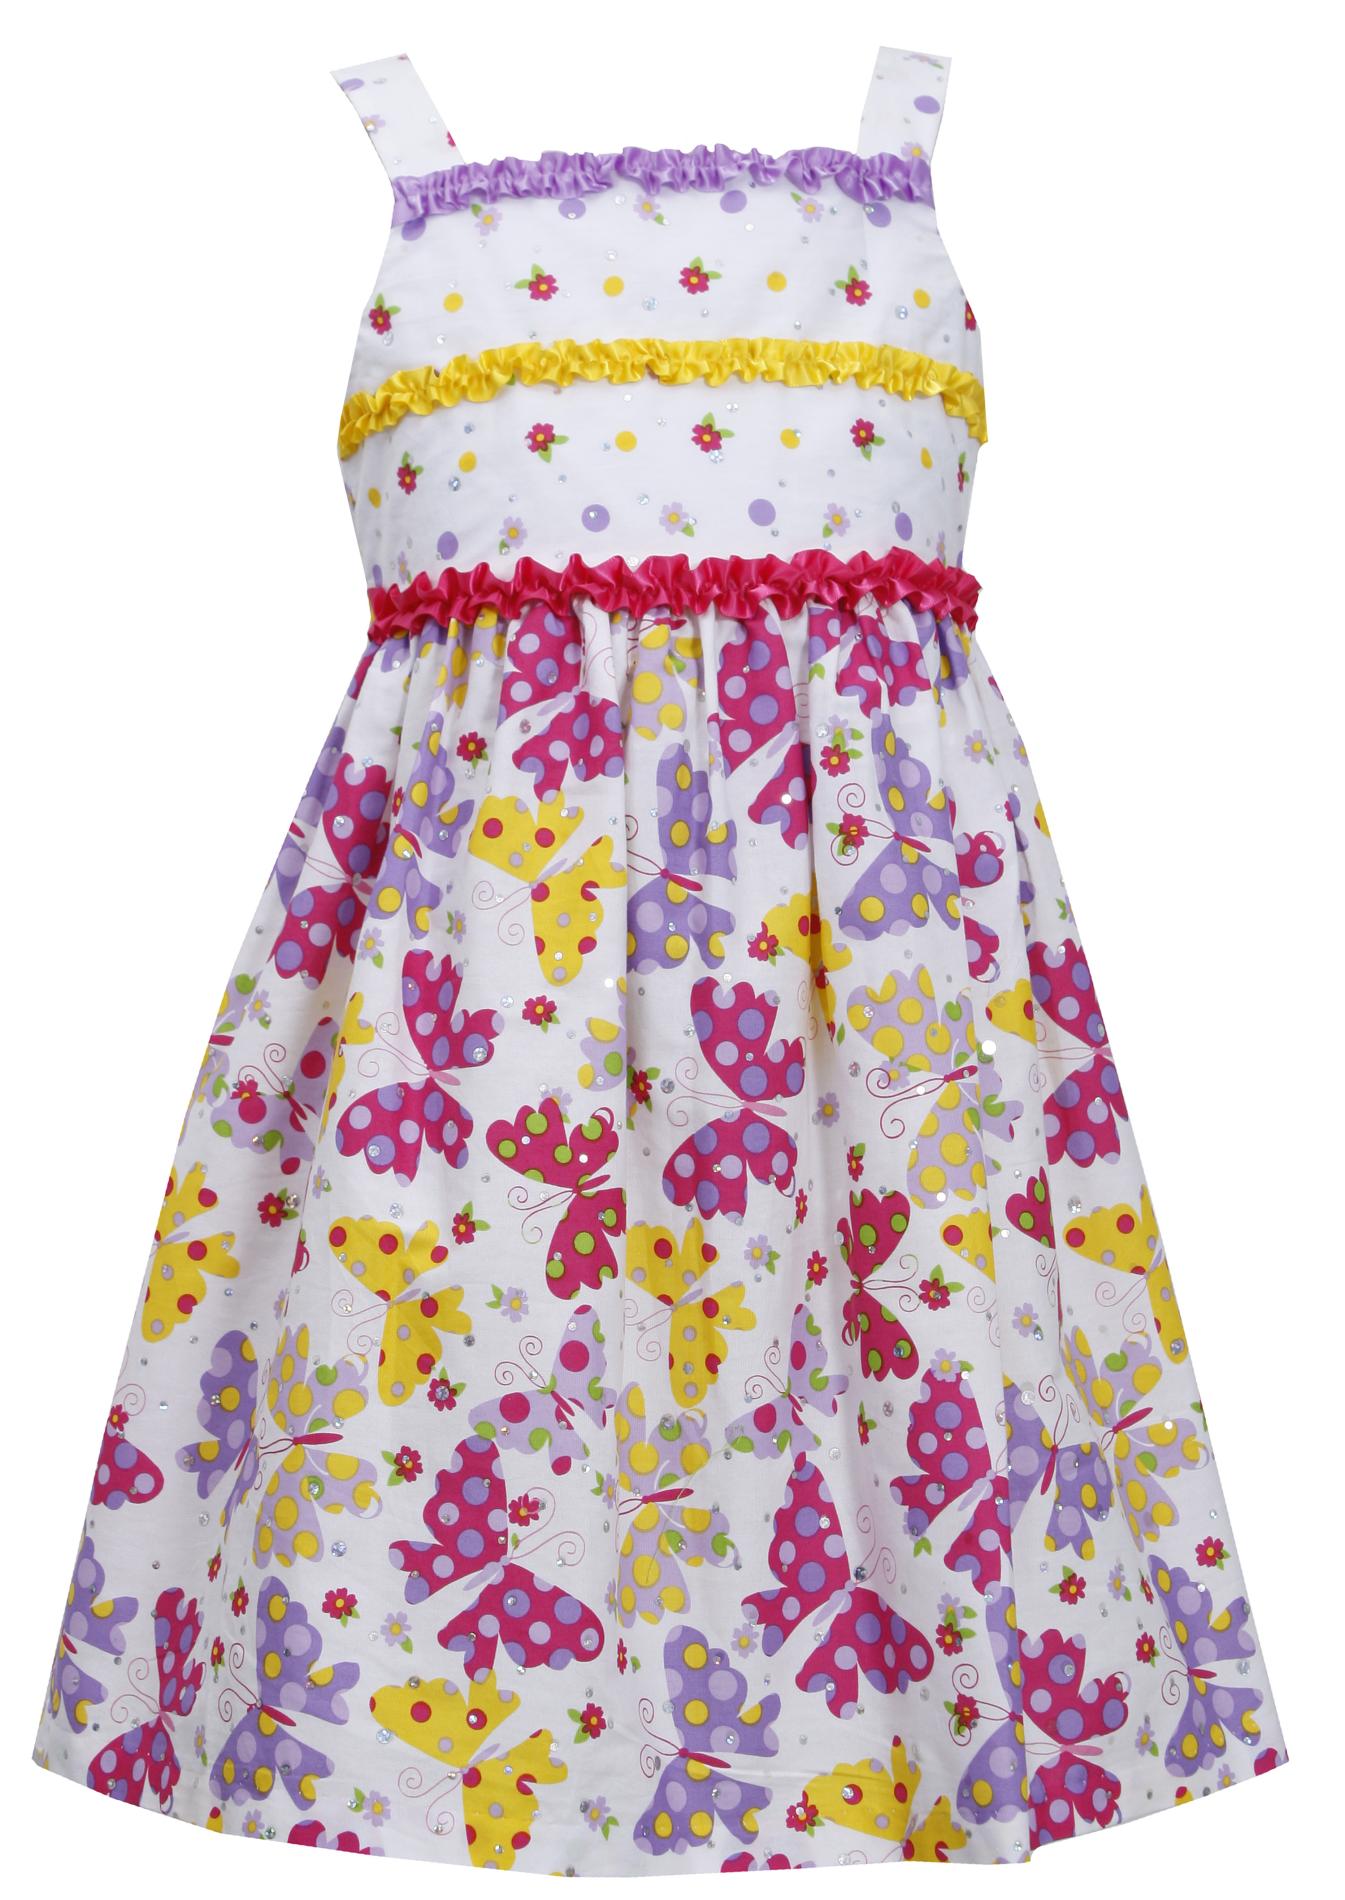 Ashley Ann Girl's Sleeveless Dress - Polka-Dot Butterflies